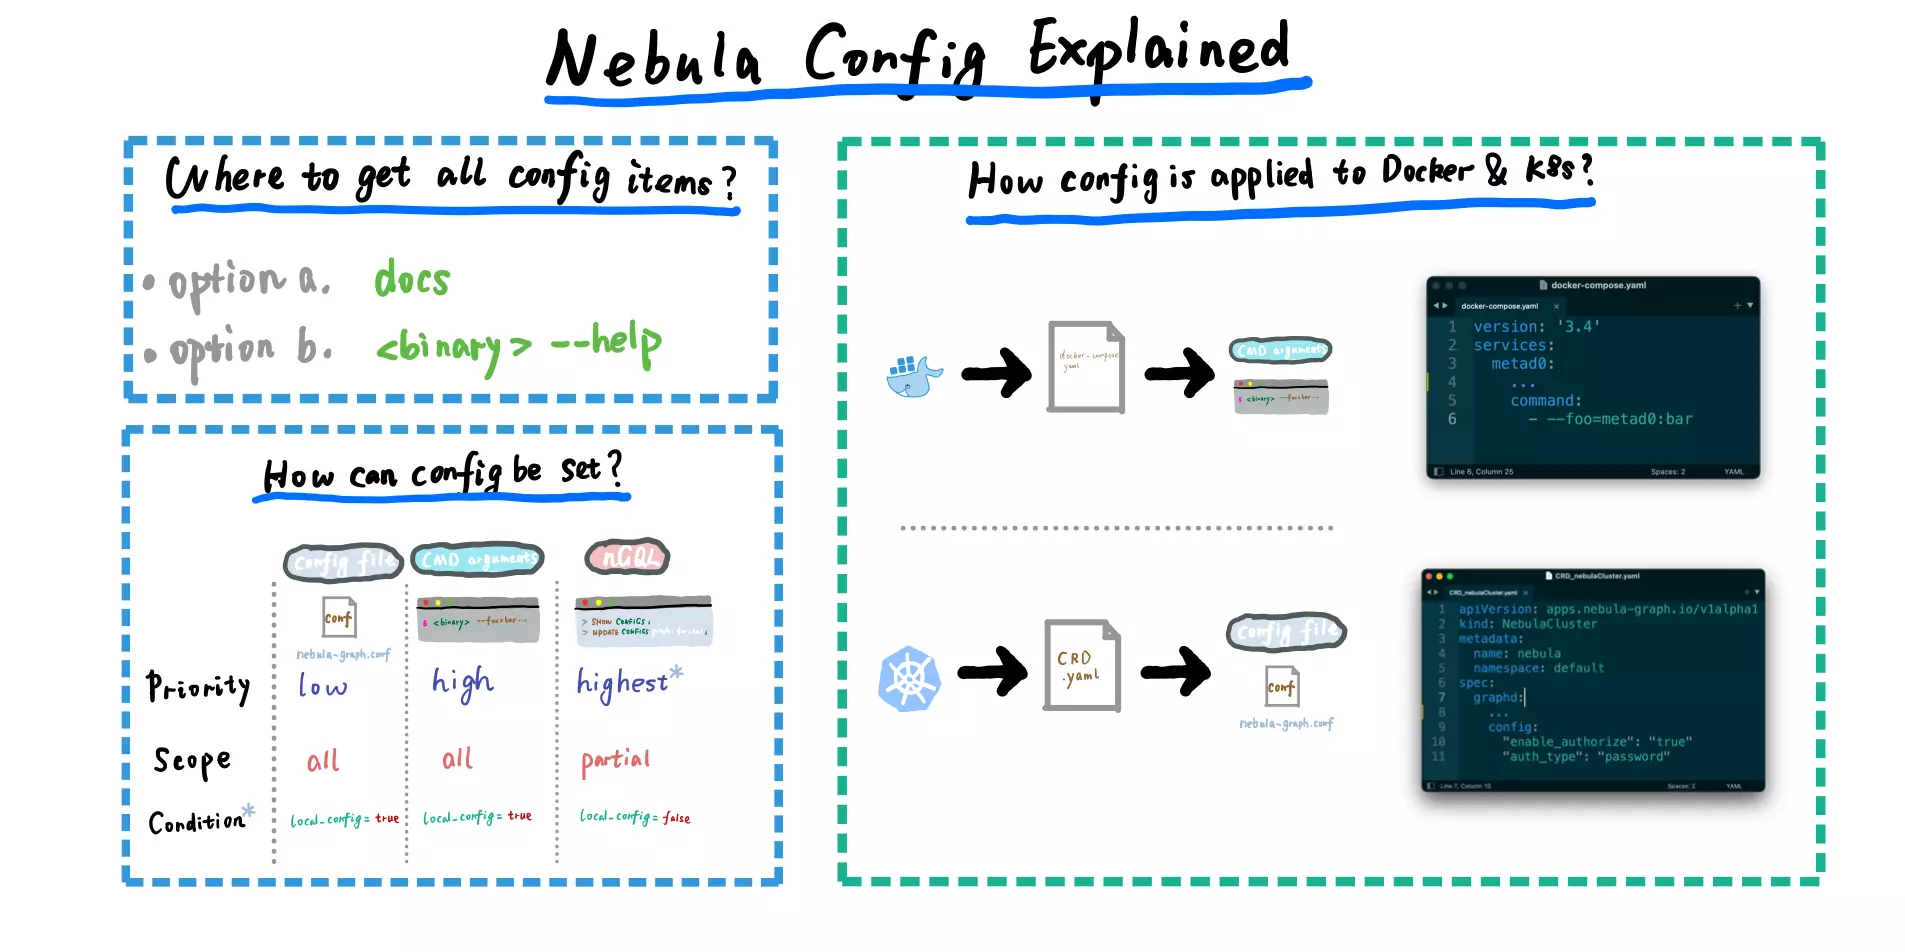 /sketches/nebula-config-explained/nebula-config-explained.webp